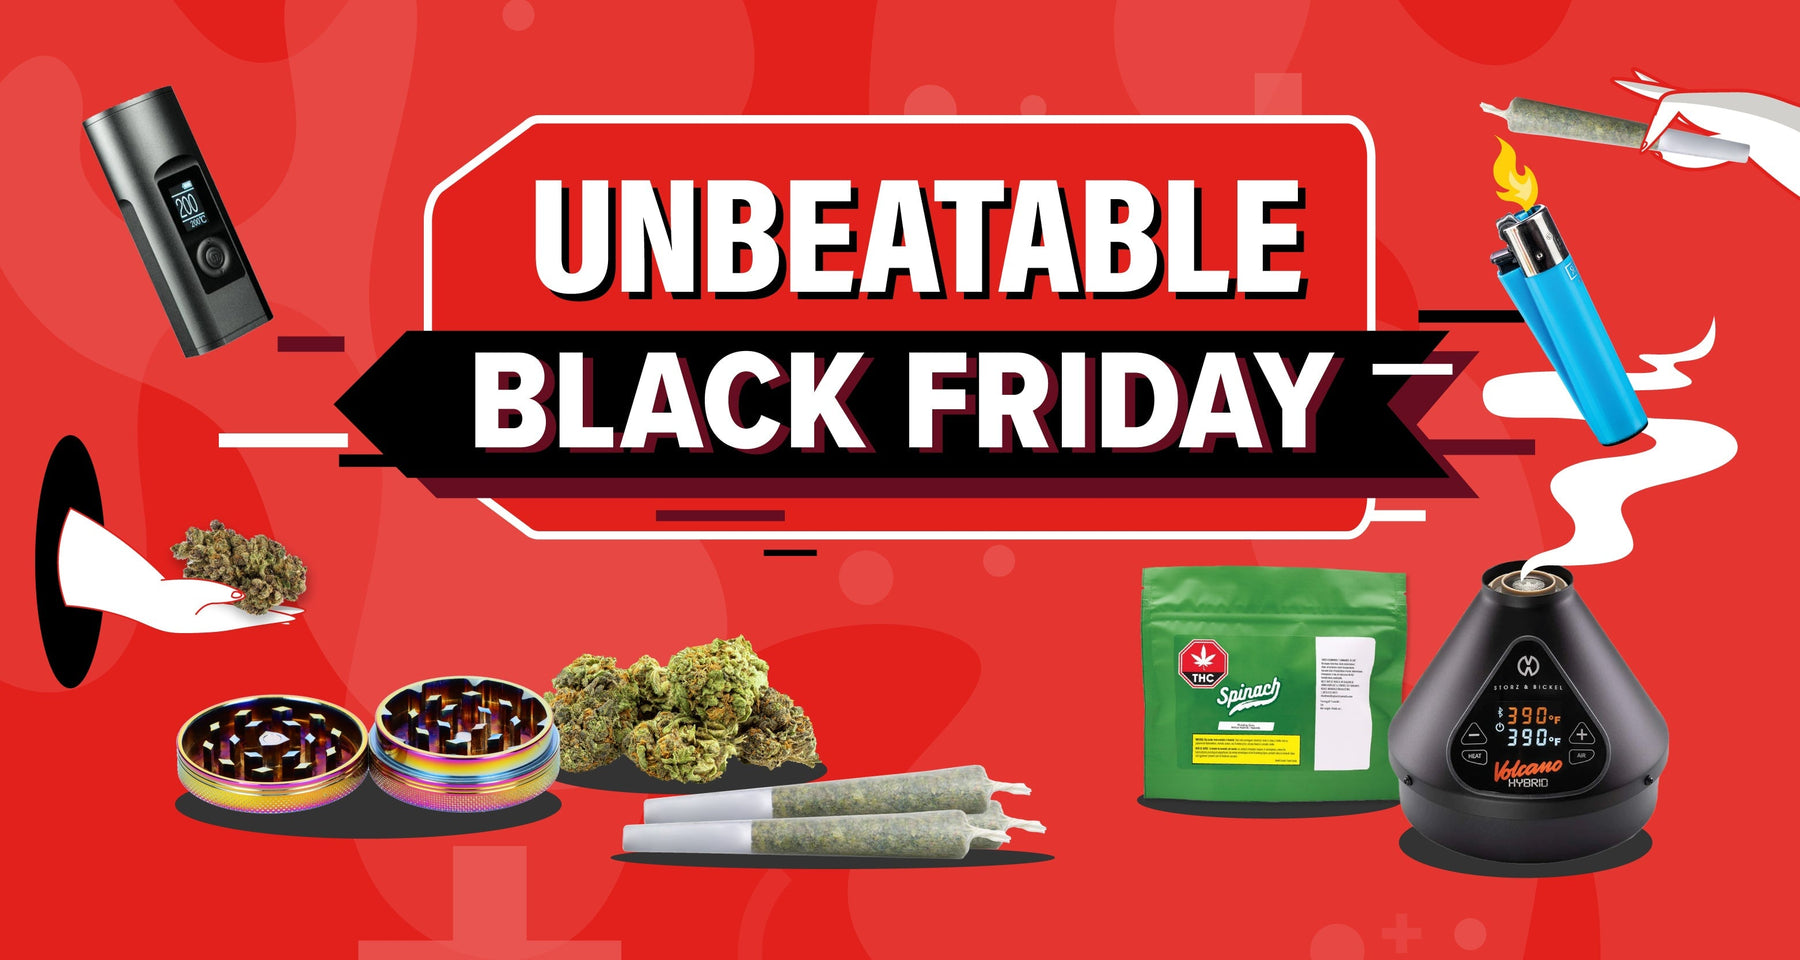 Ready for an UNBEATABLE Black Friday?